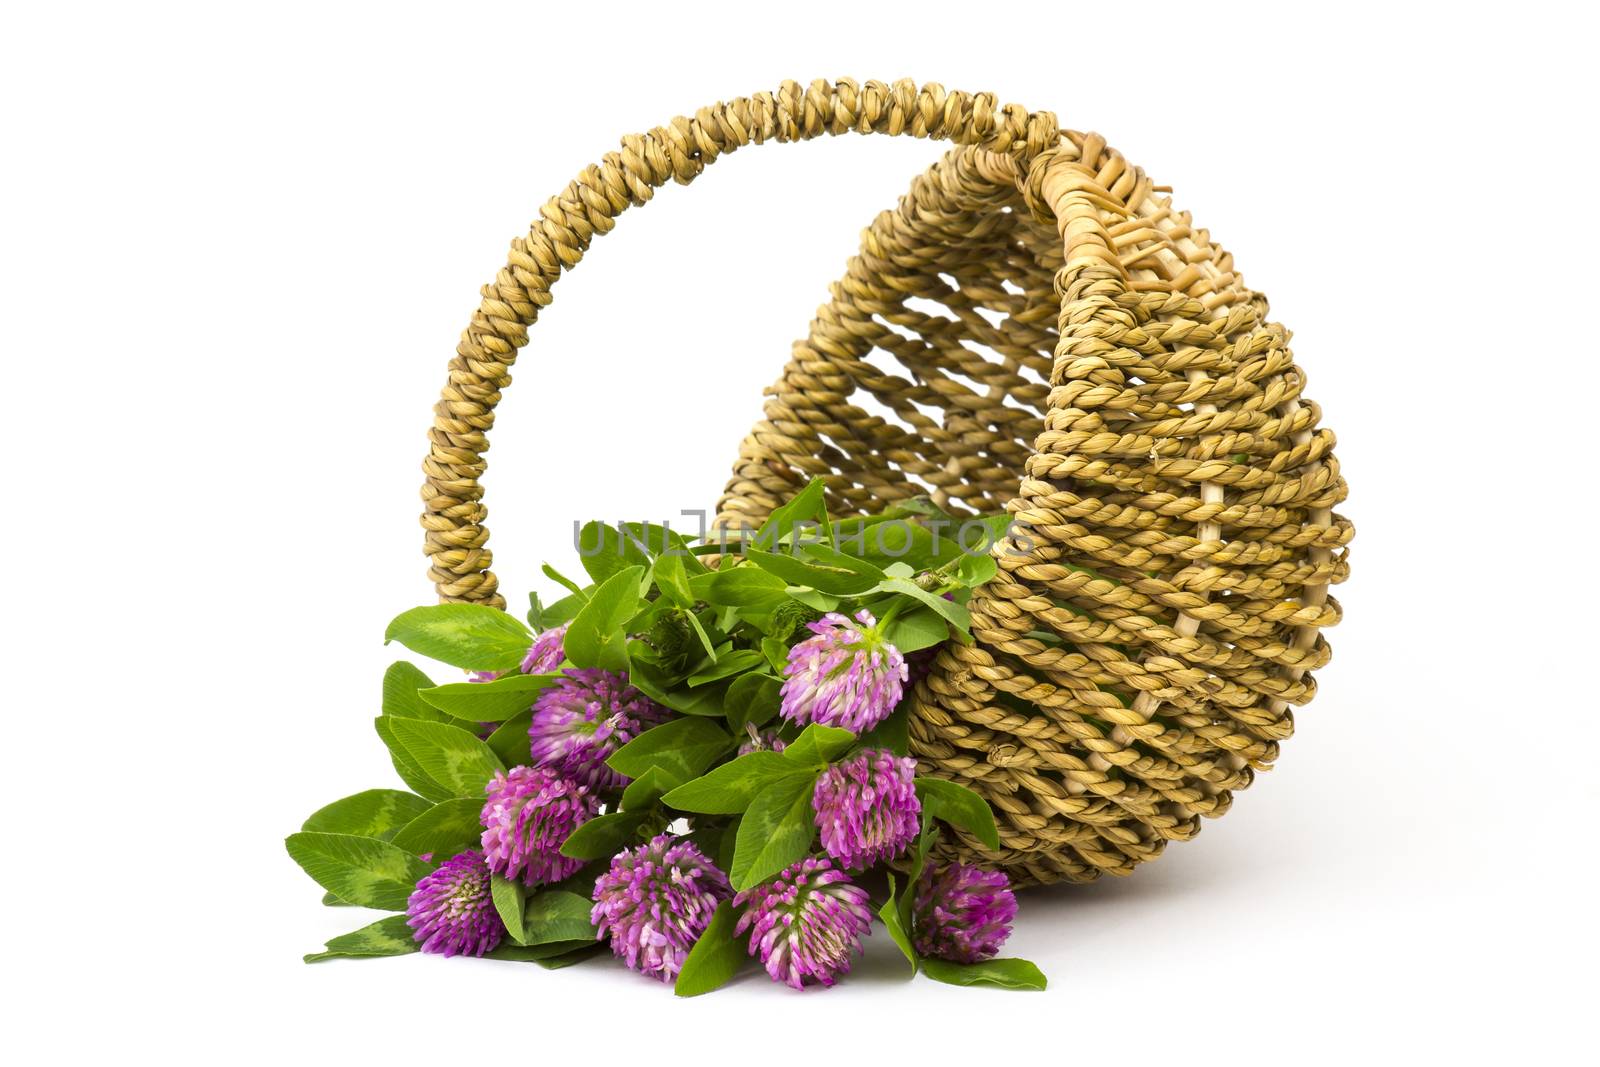 basket with clover by miradrozdowski